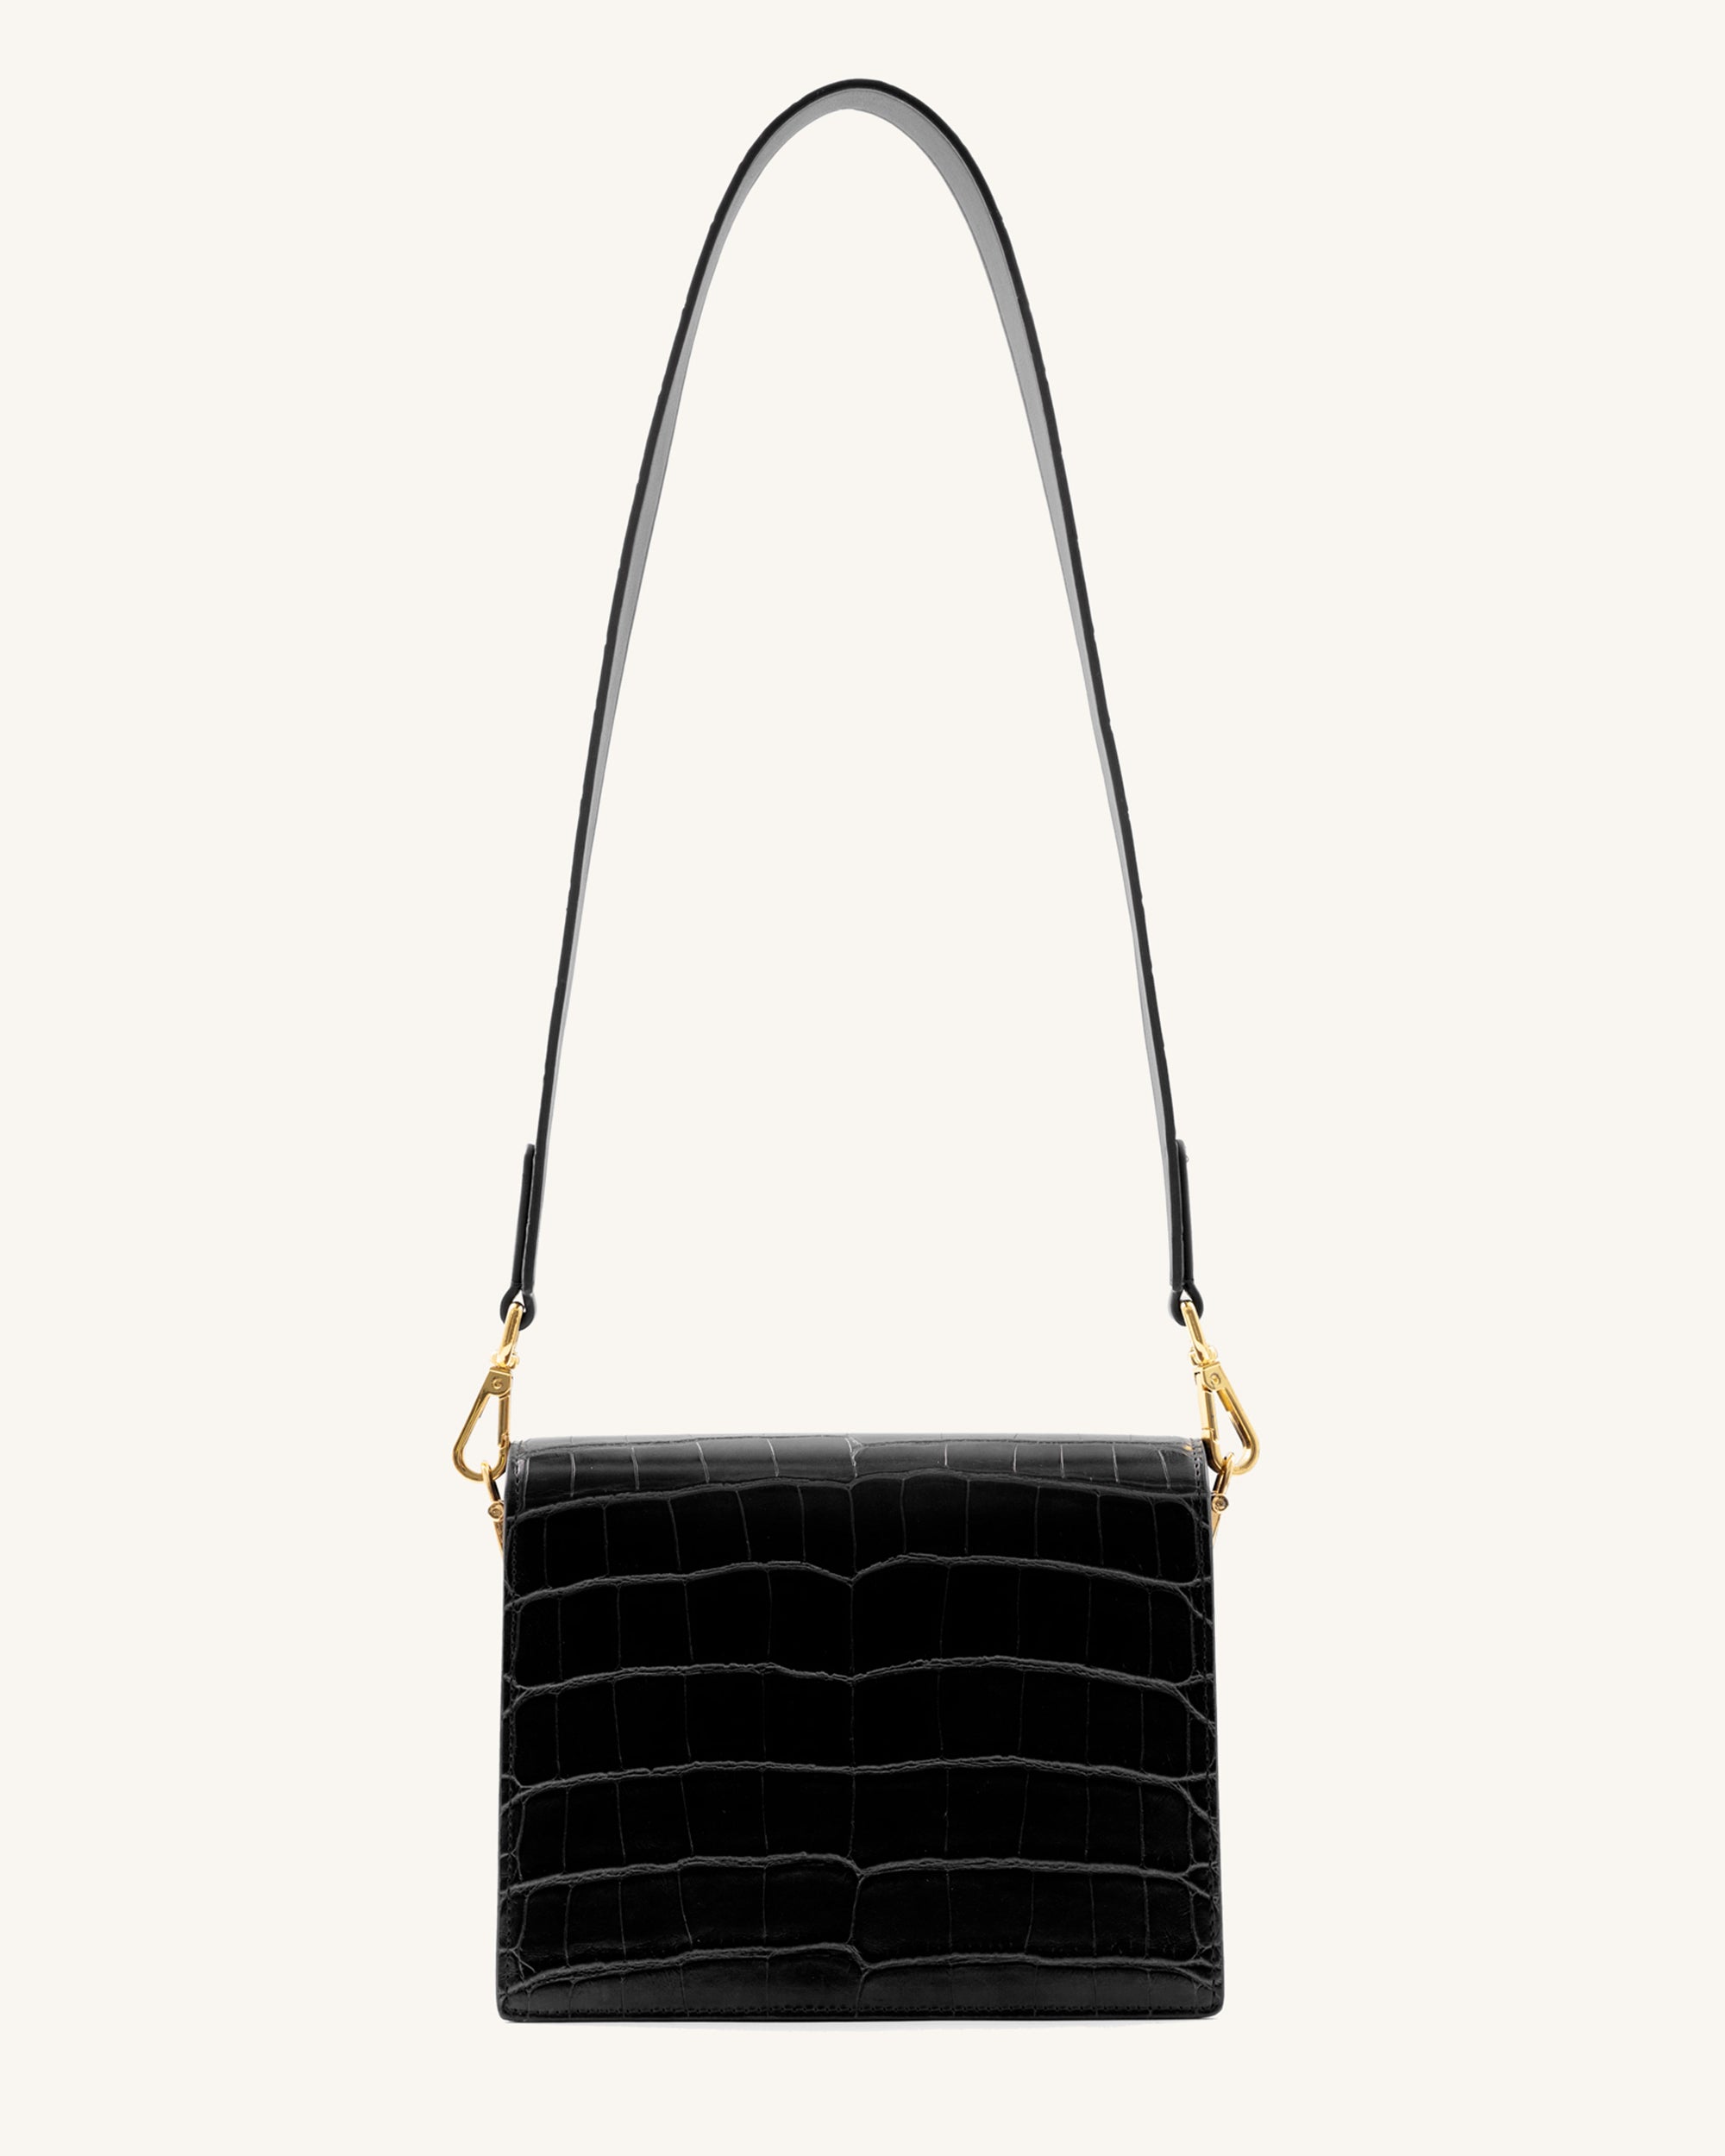 New Mini Black Flap Simple Women's Crossbody Bag